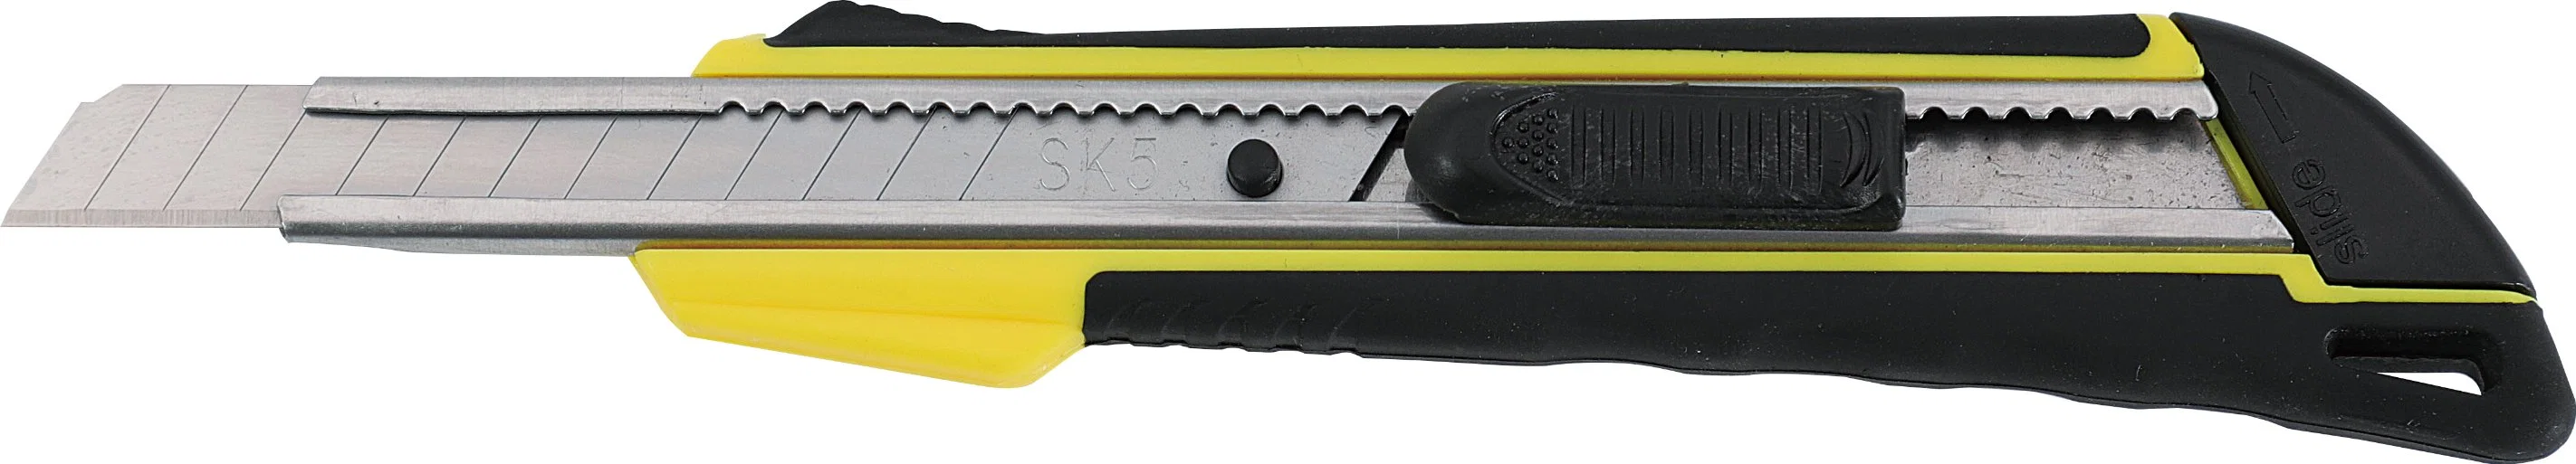 18ПК на базе профессионального ручного инструмента для домашнего использования Ремонтный комплект комплект инструментов для самостоятельного использования